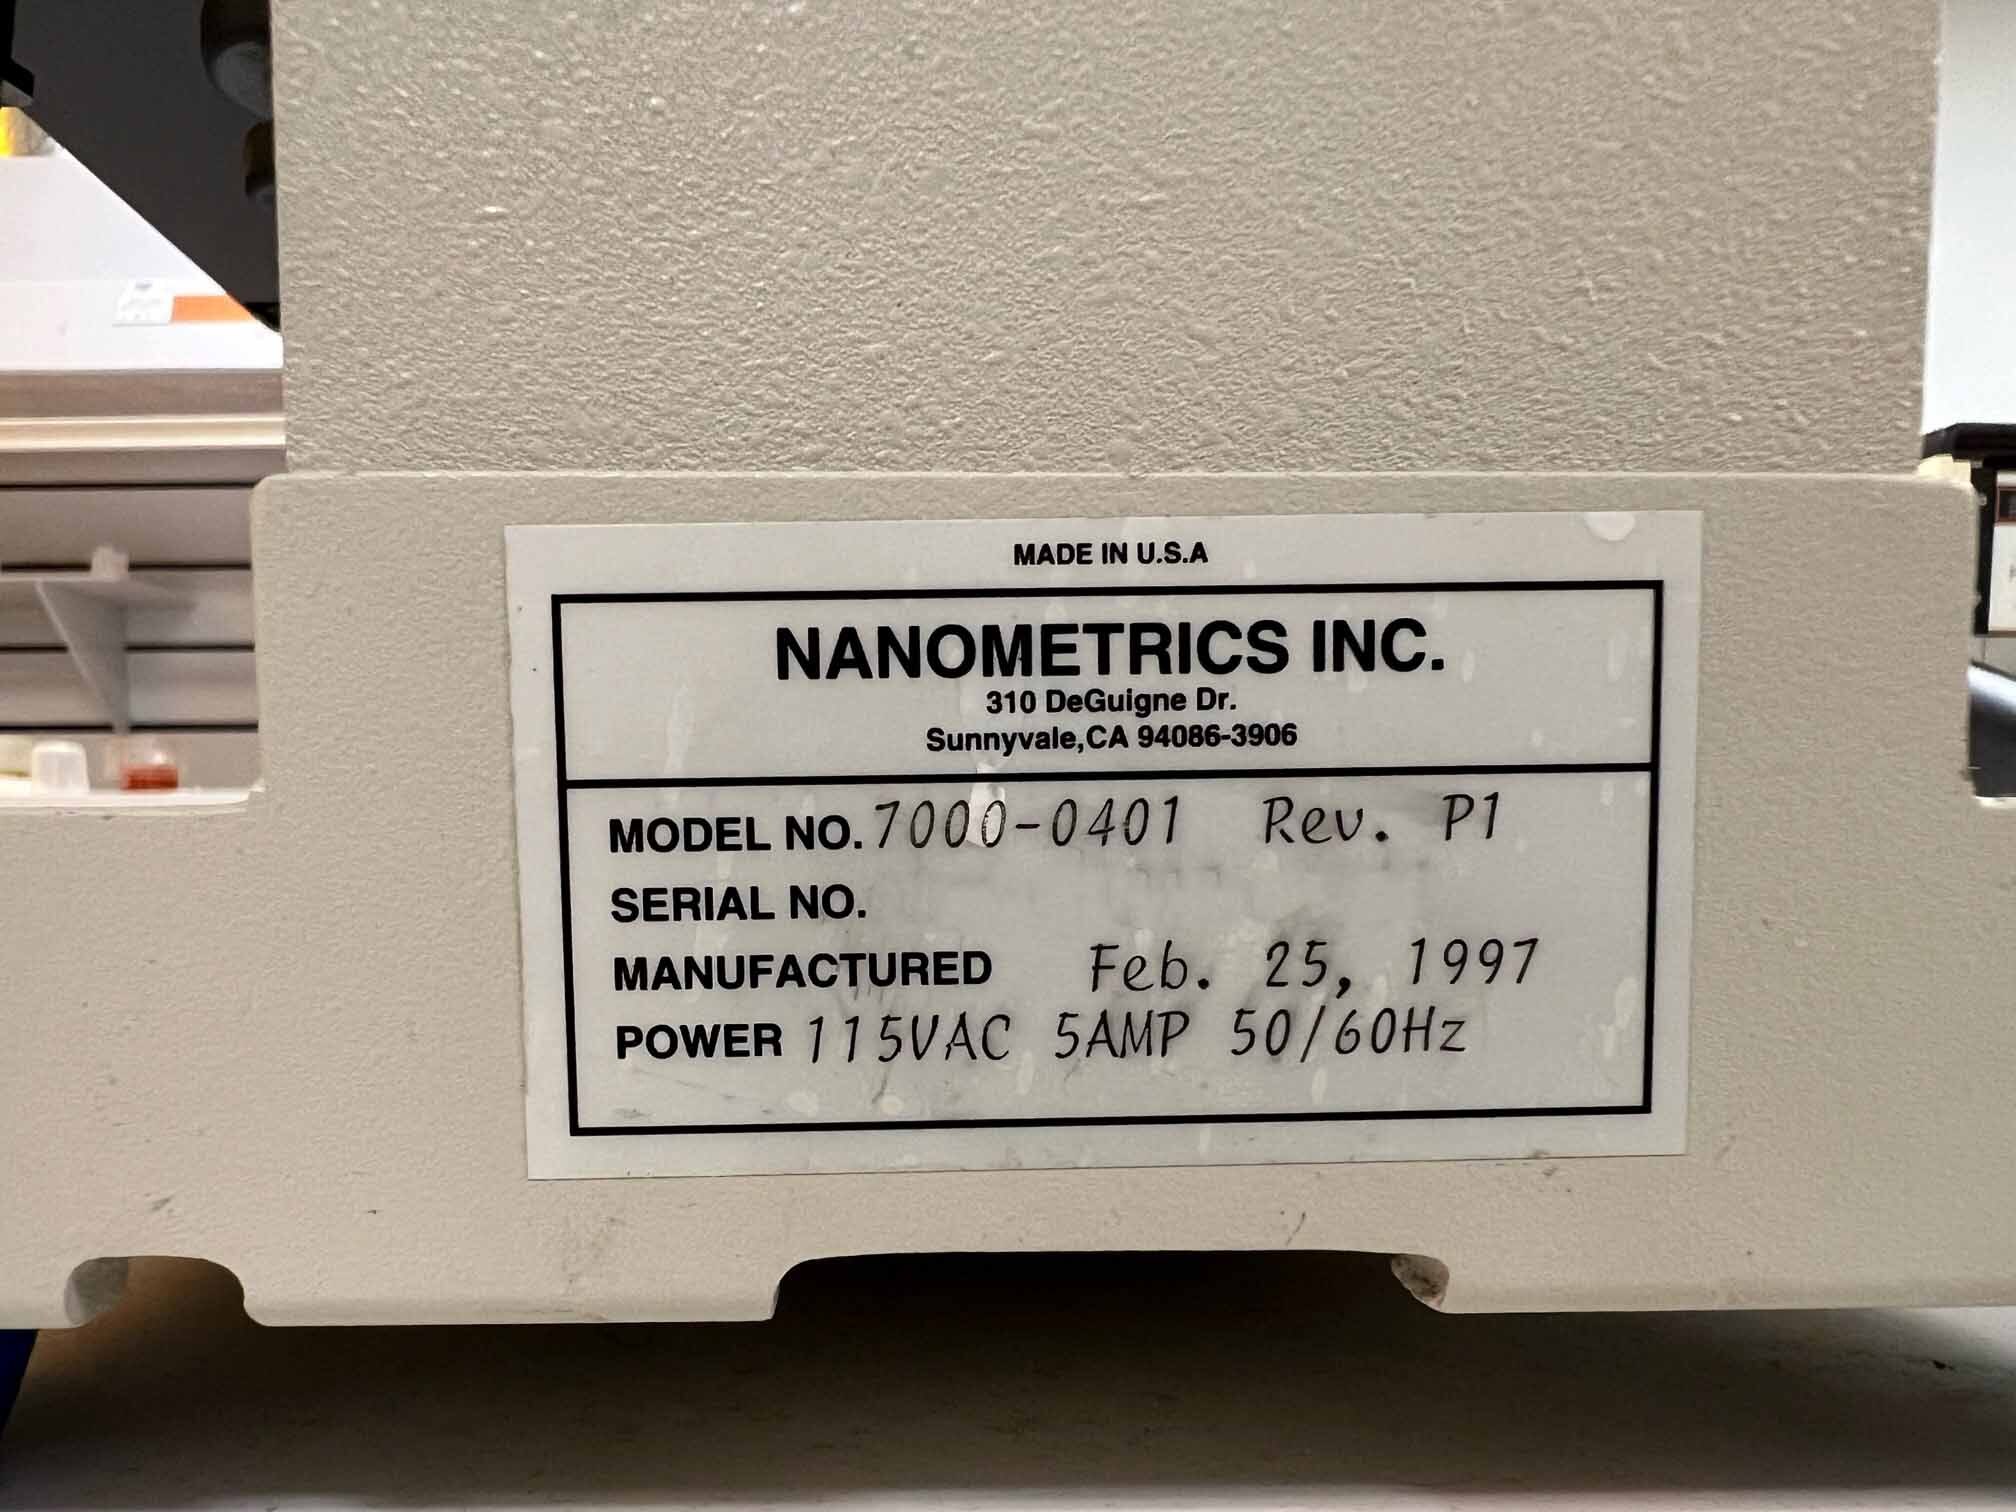 圖為 已使用的 NANOMETRICS NanoSpec AFT 4000 待售